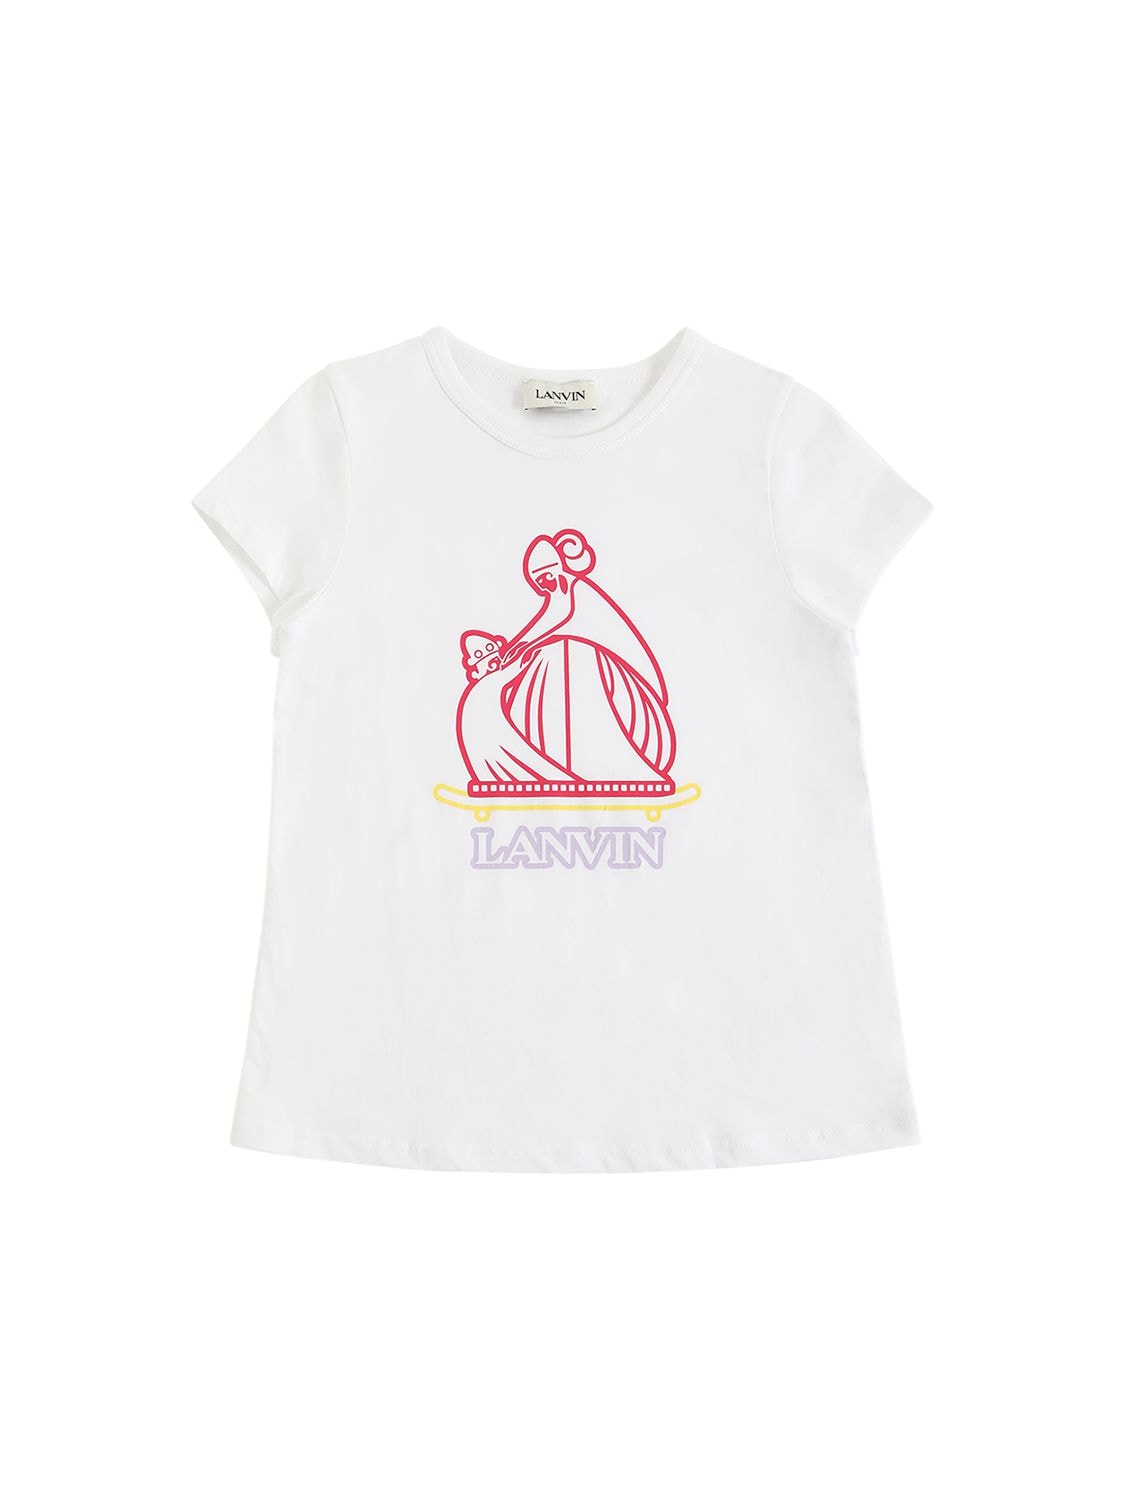 Lanvin Kids' Printed Logo Cotton Jersey T-shirt In Bianco